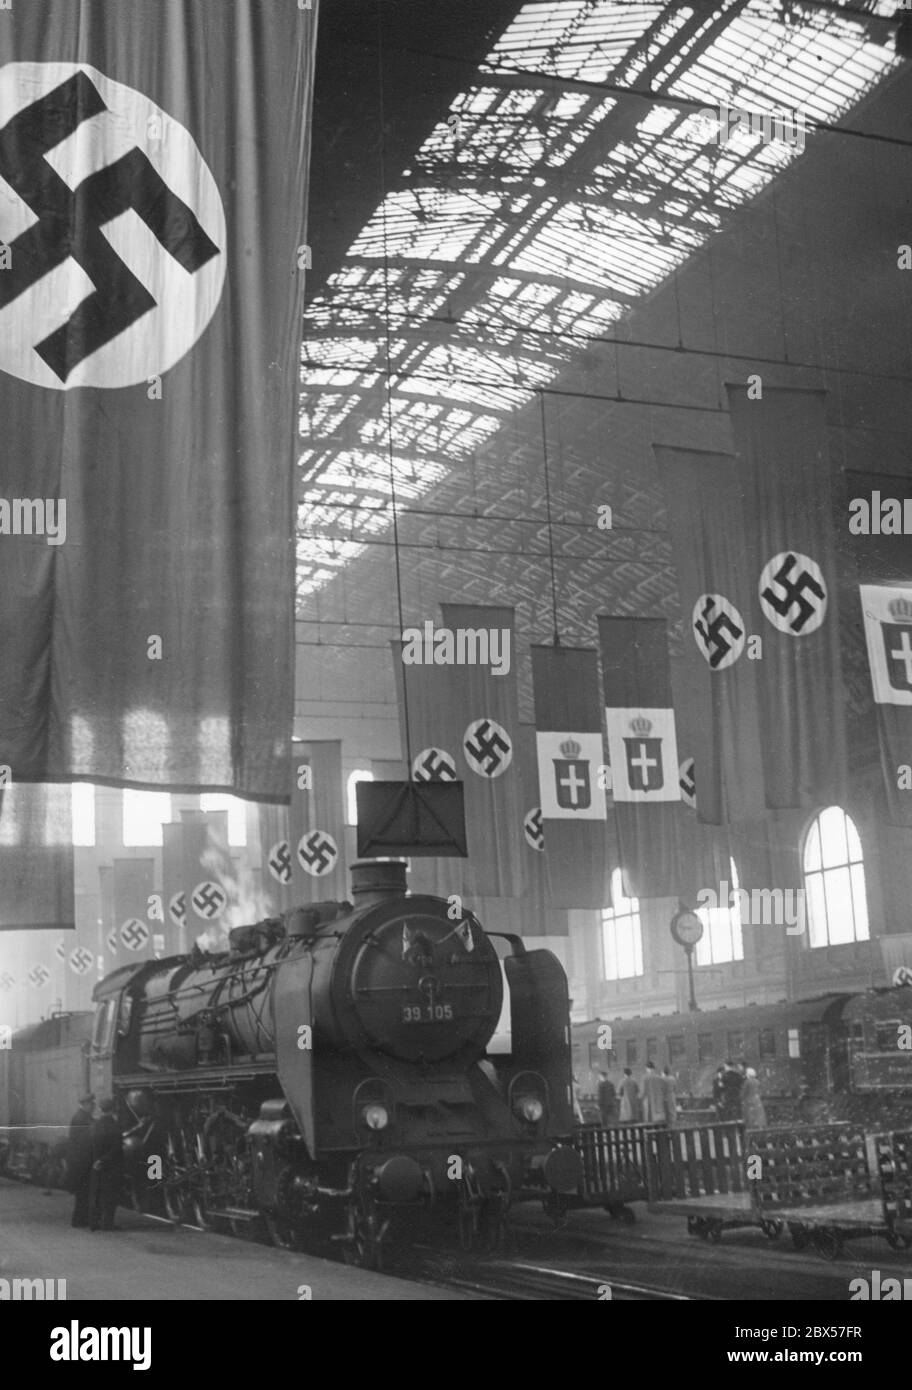 L'Anhalter Bahnhof a Berlino è decorato con stile festivo. Decorazione a bandiera nei colori nazionali tedesco e italiano. Foto Stock